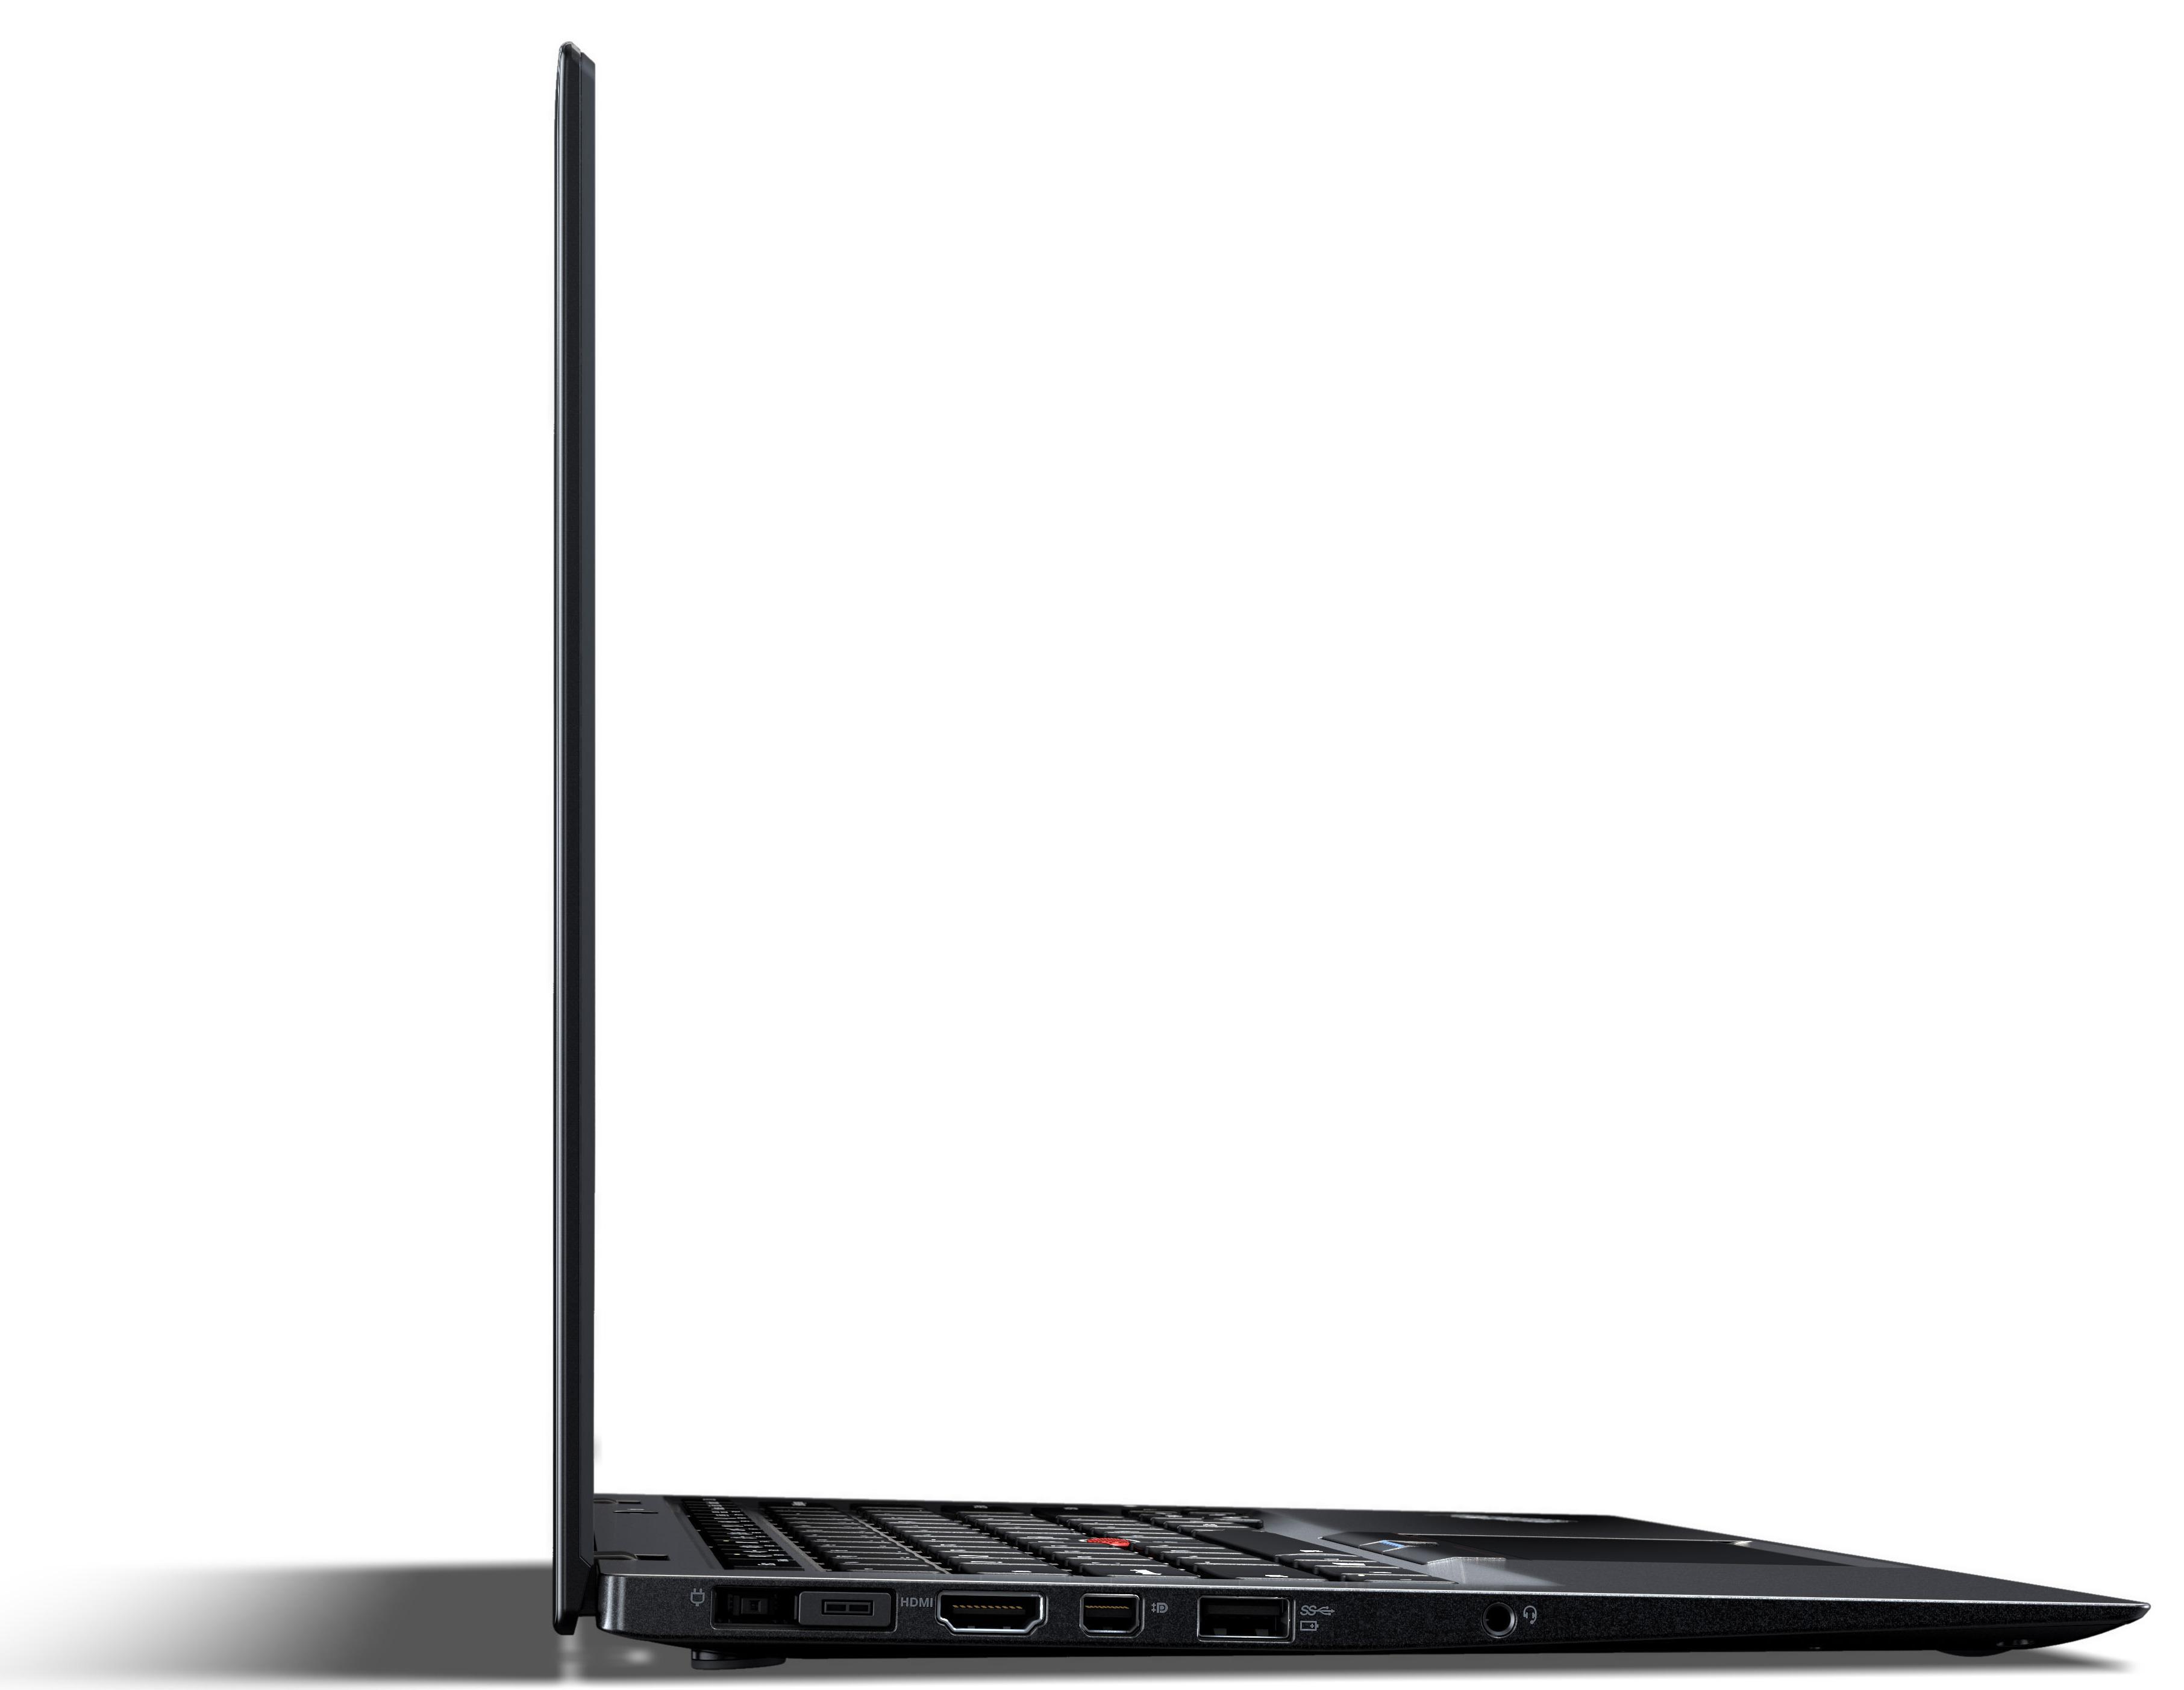 Lenovos ThinkPad X1 Carbon er svært tynn til å by på såpass kraftige komponenter som serien pleier å diske opp med.Foto: Lenovo